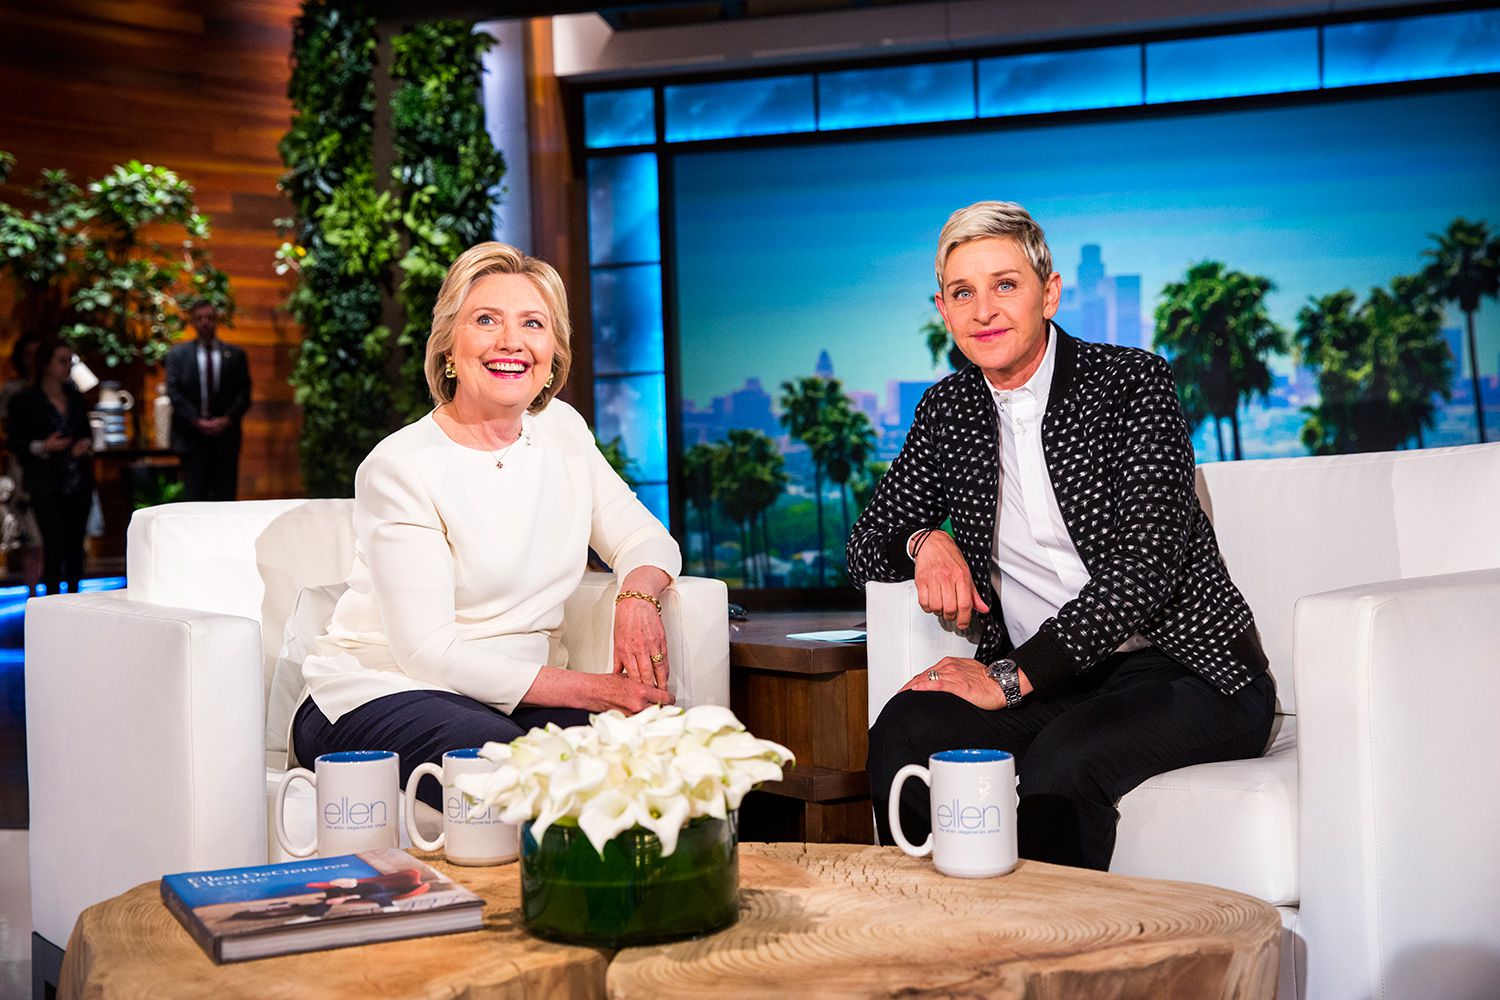 How to Get Tickets to 'The Ellen DeGeneres Show'
